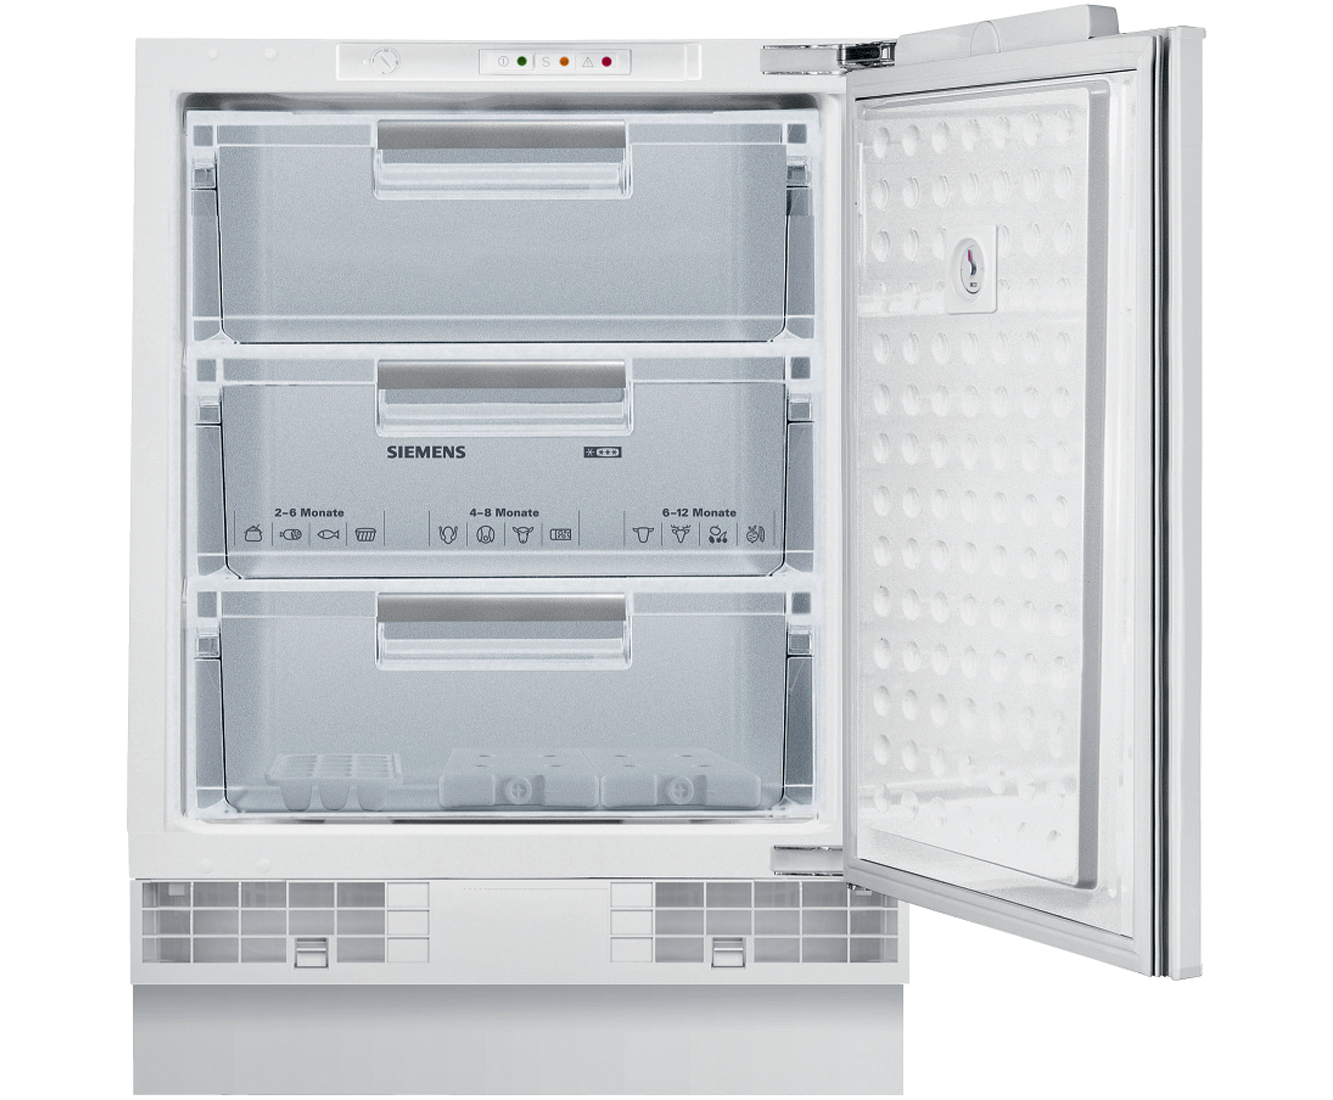 Siemens GU15DA50GB Built Under Freezer in White